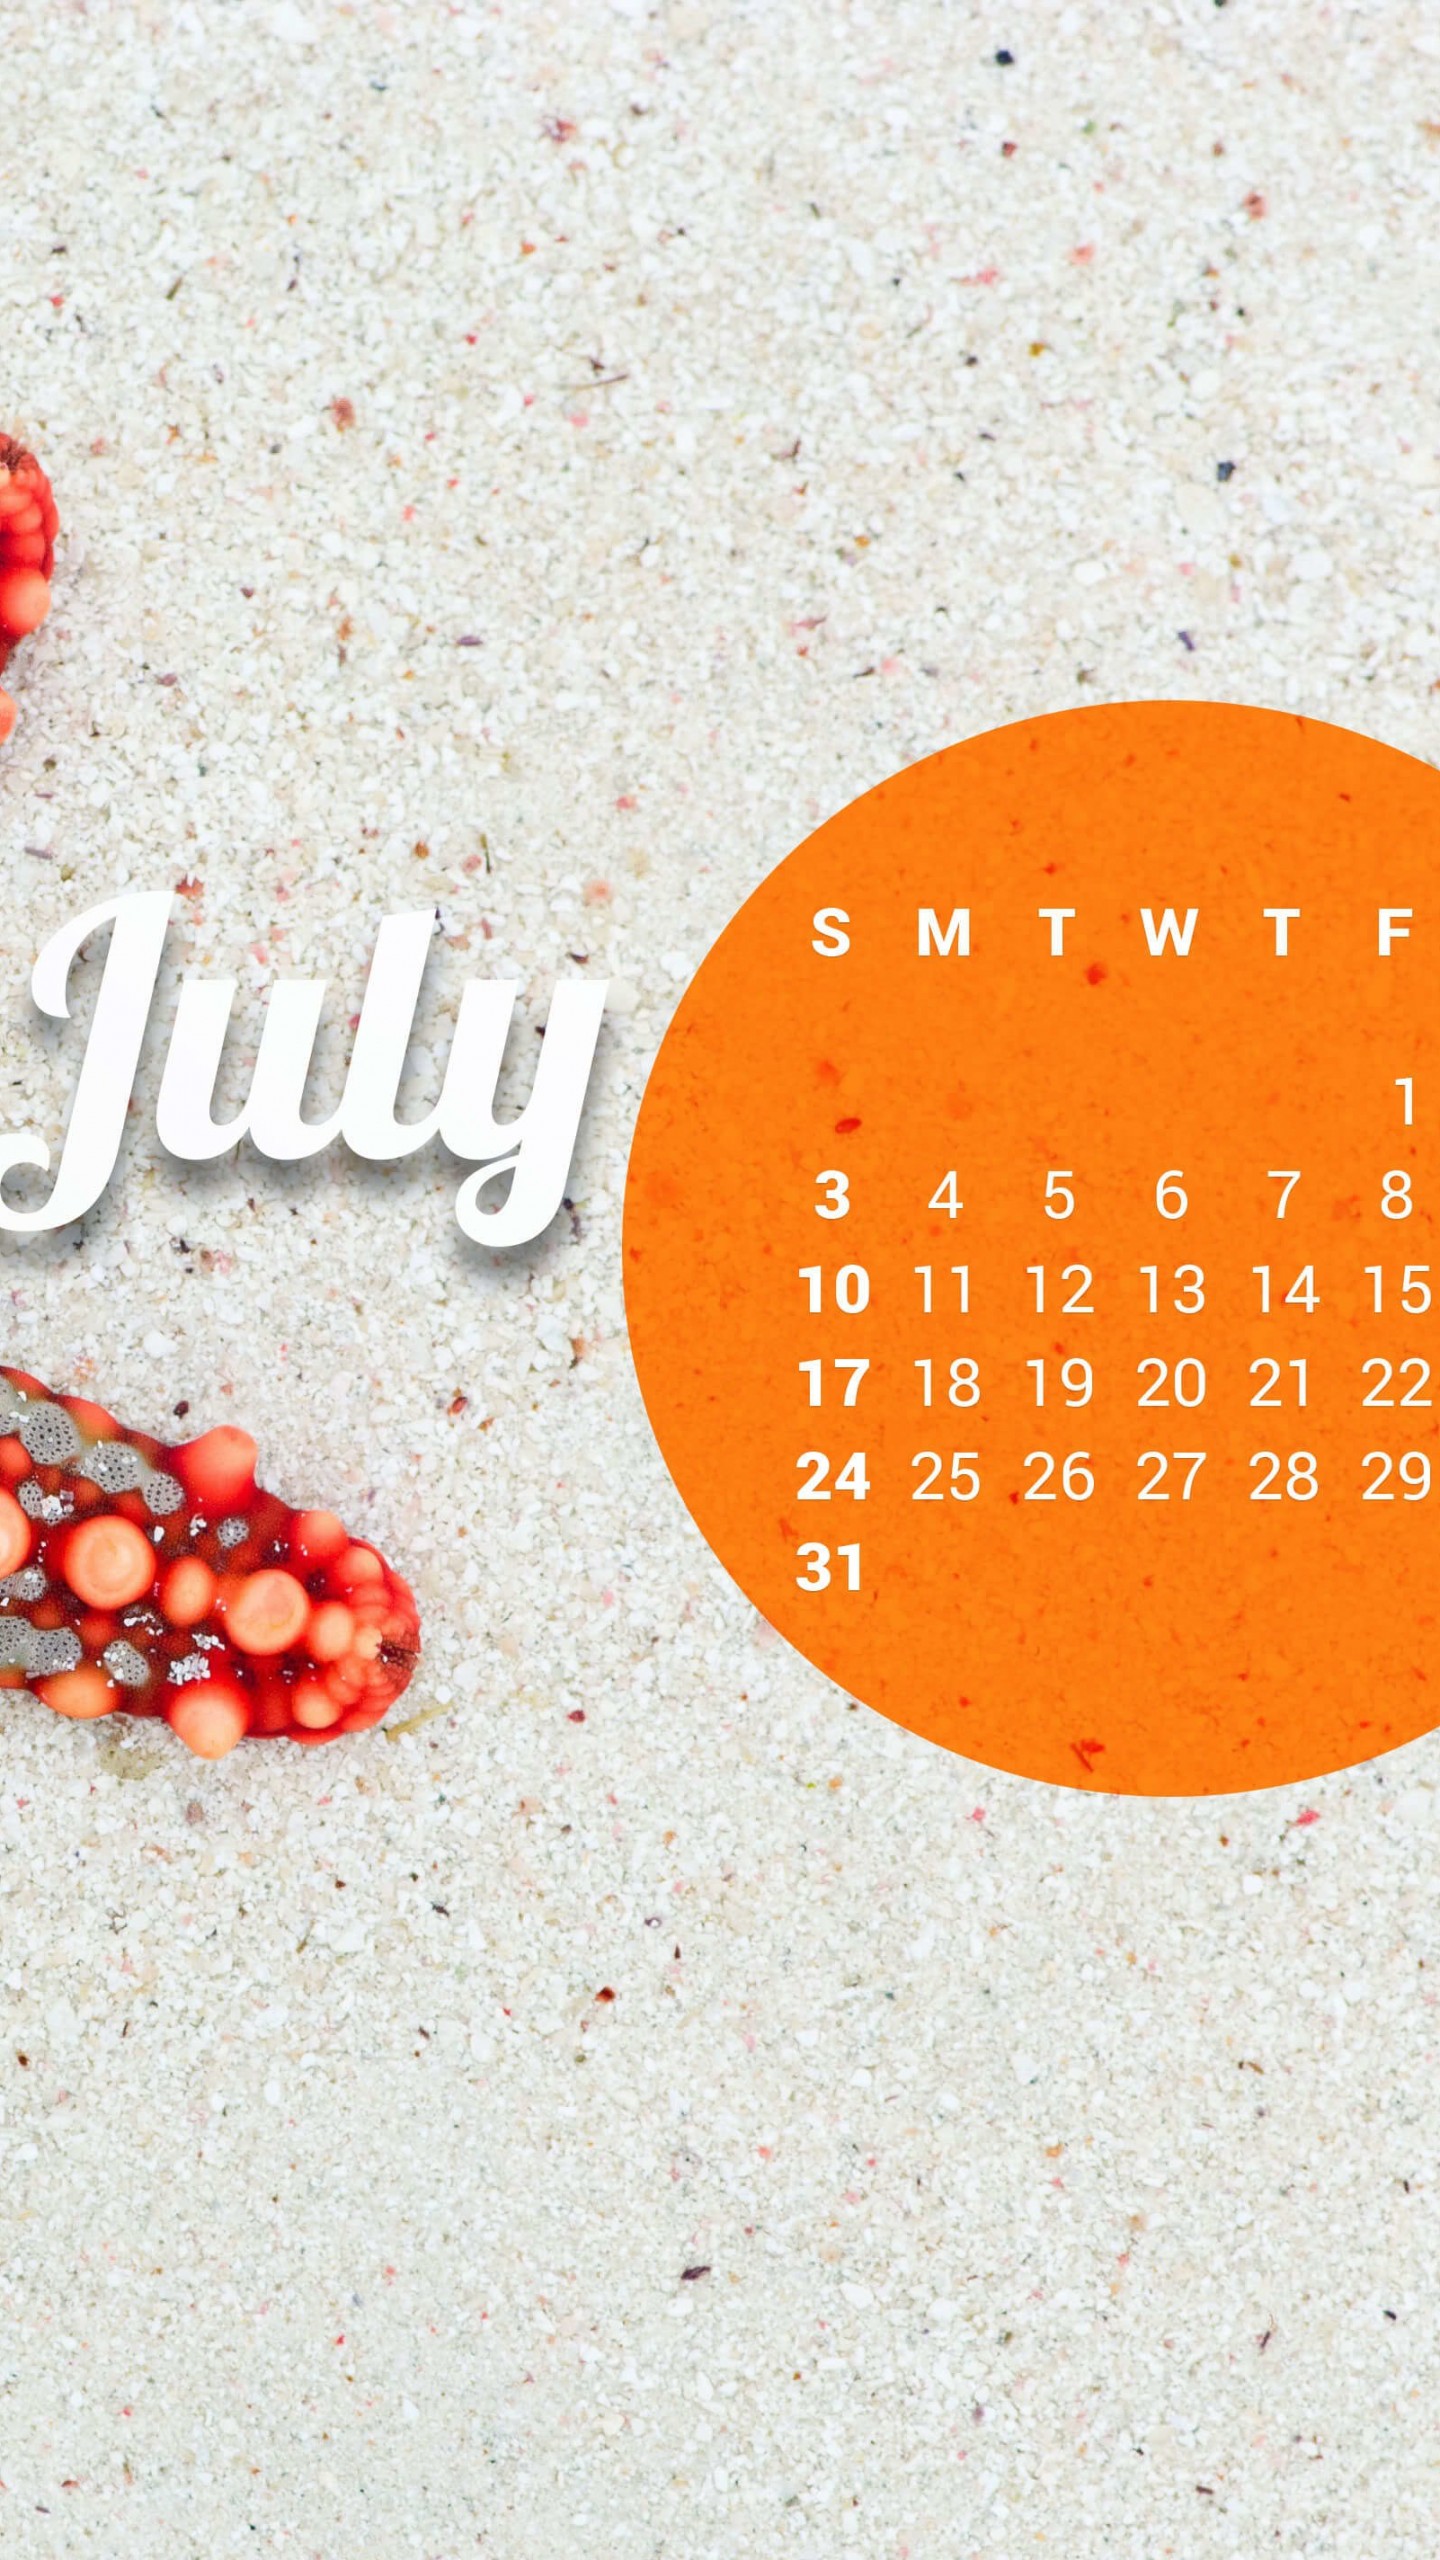 July 2016 Calendar Wallpaper for Google Nexus 6P